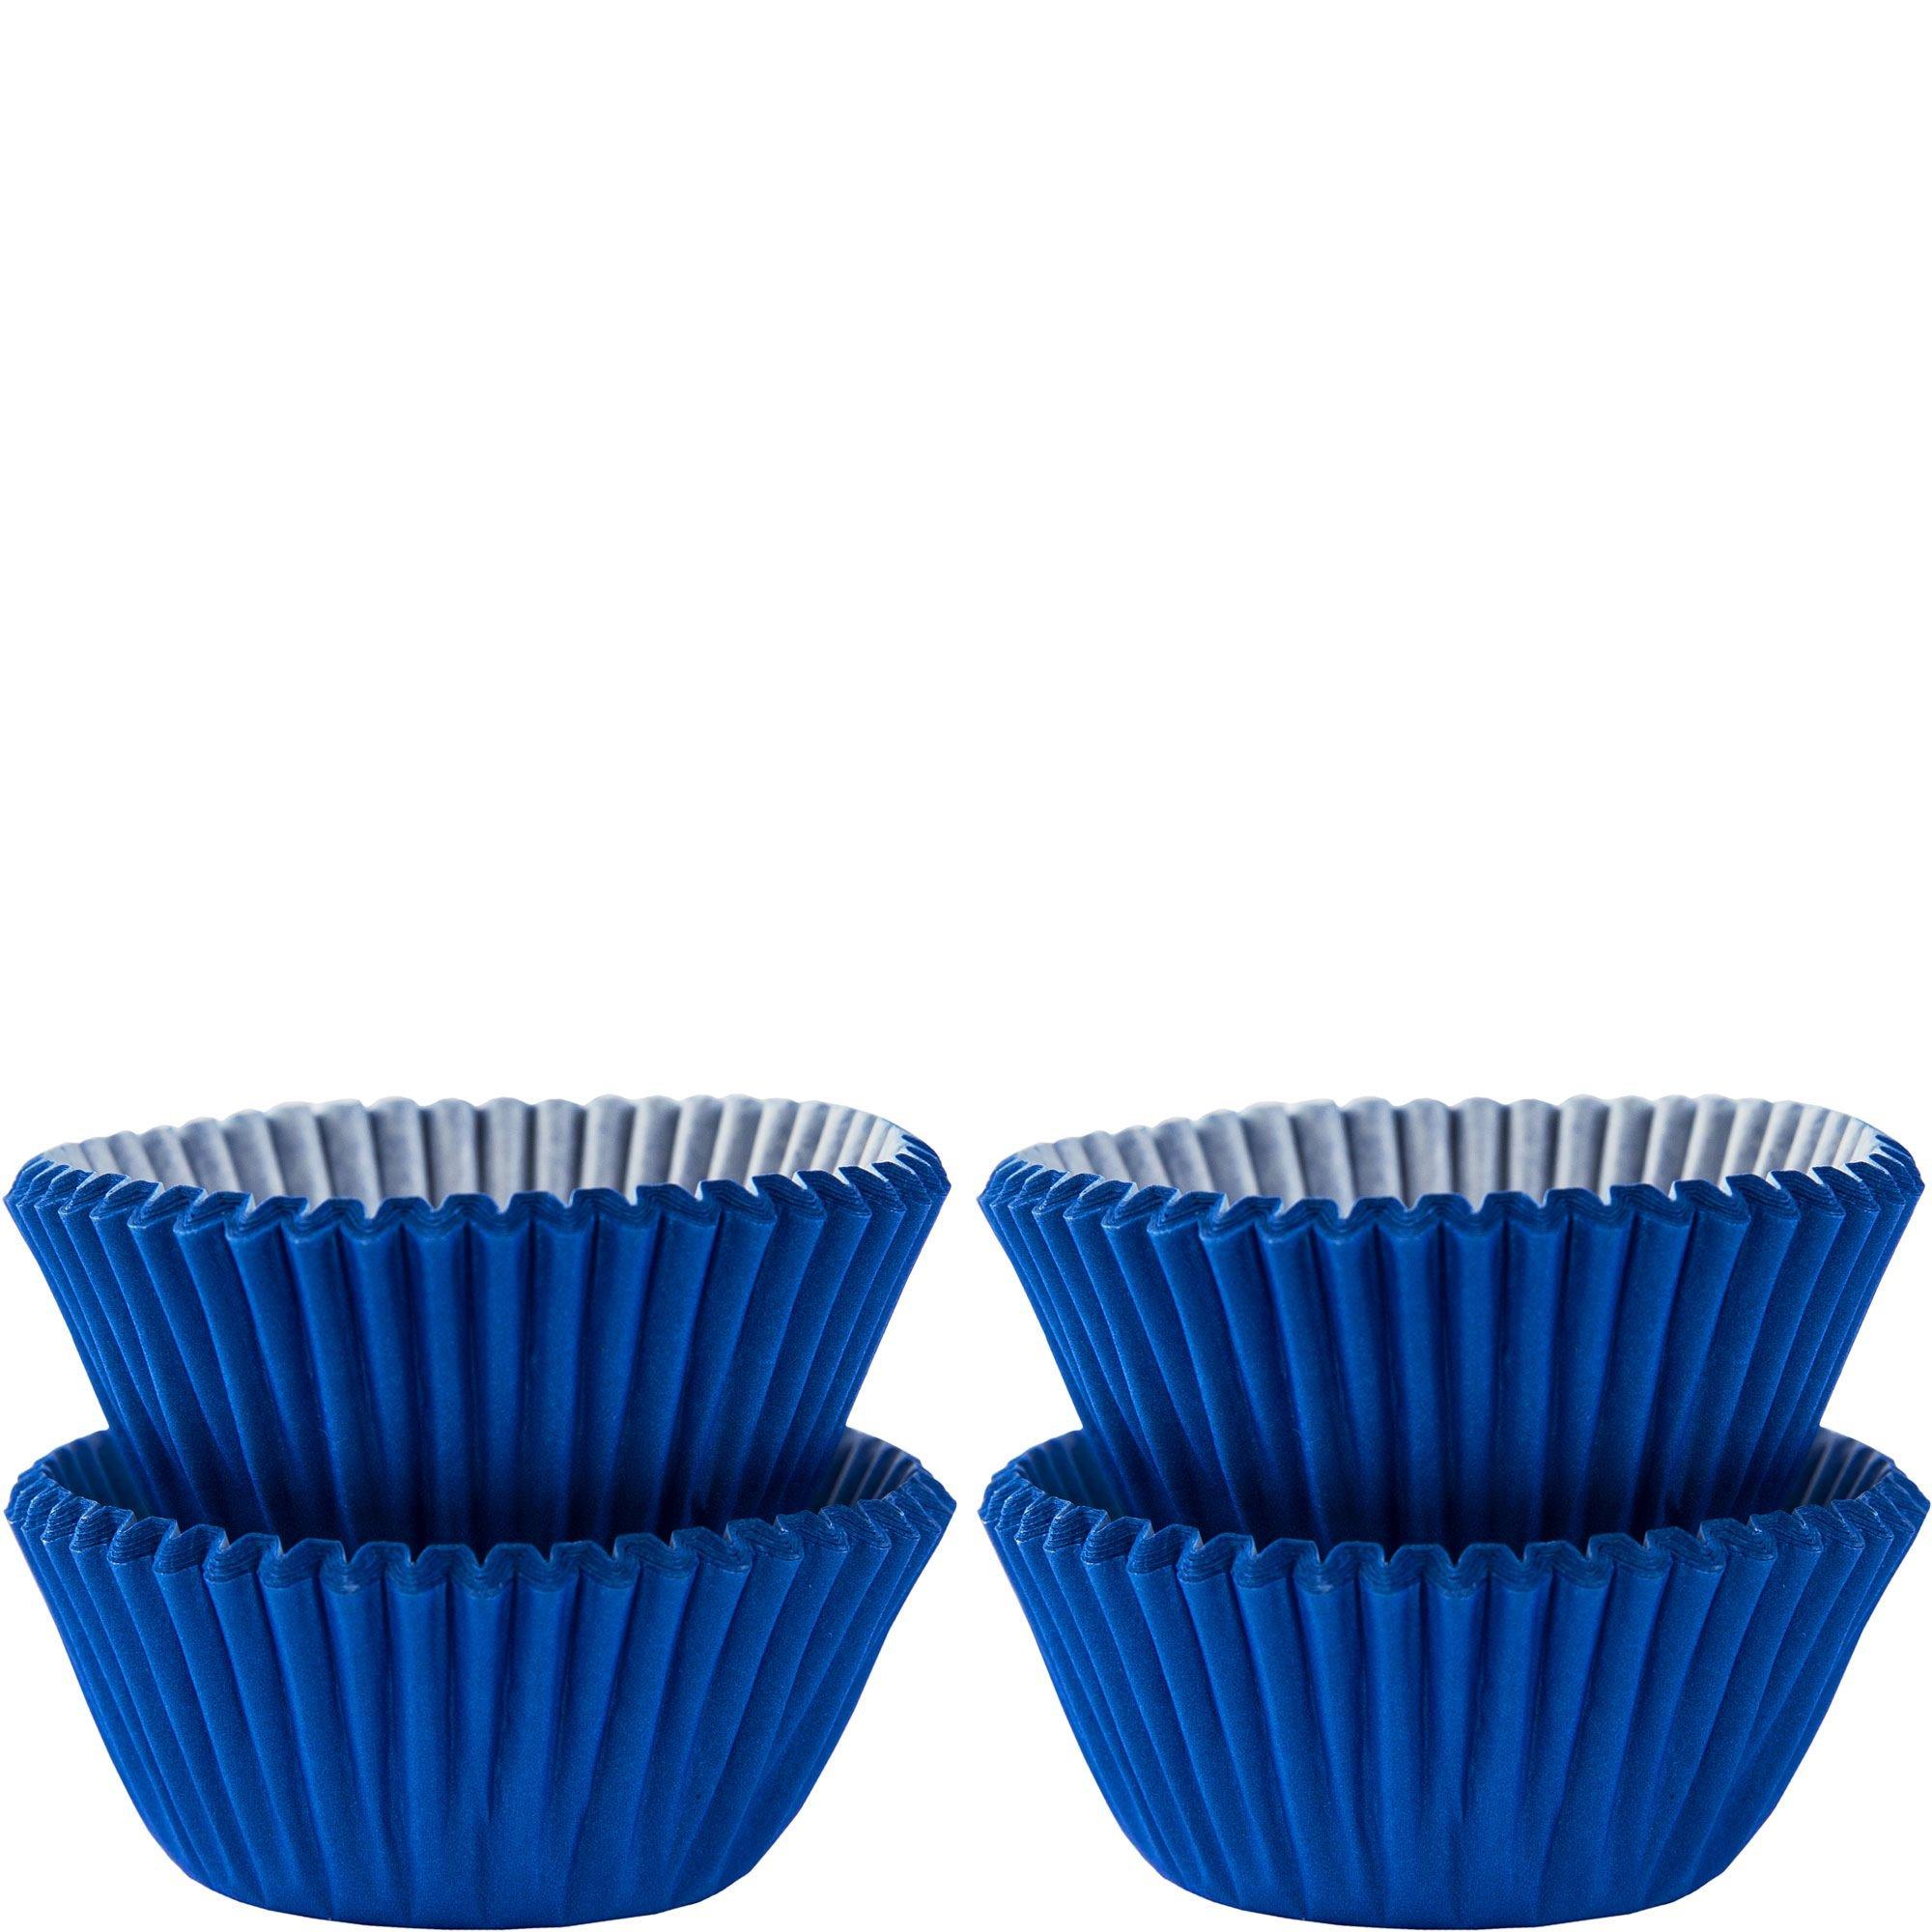 Mini Baking Cups 100ct